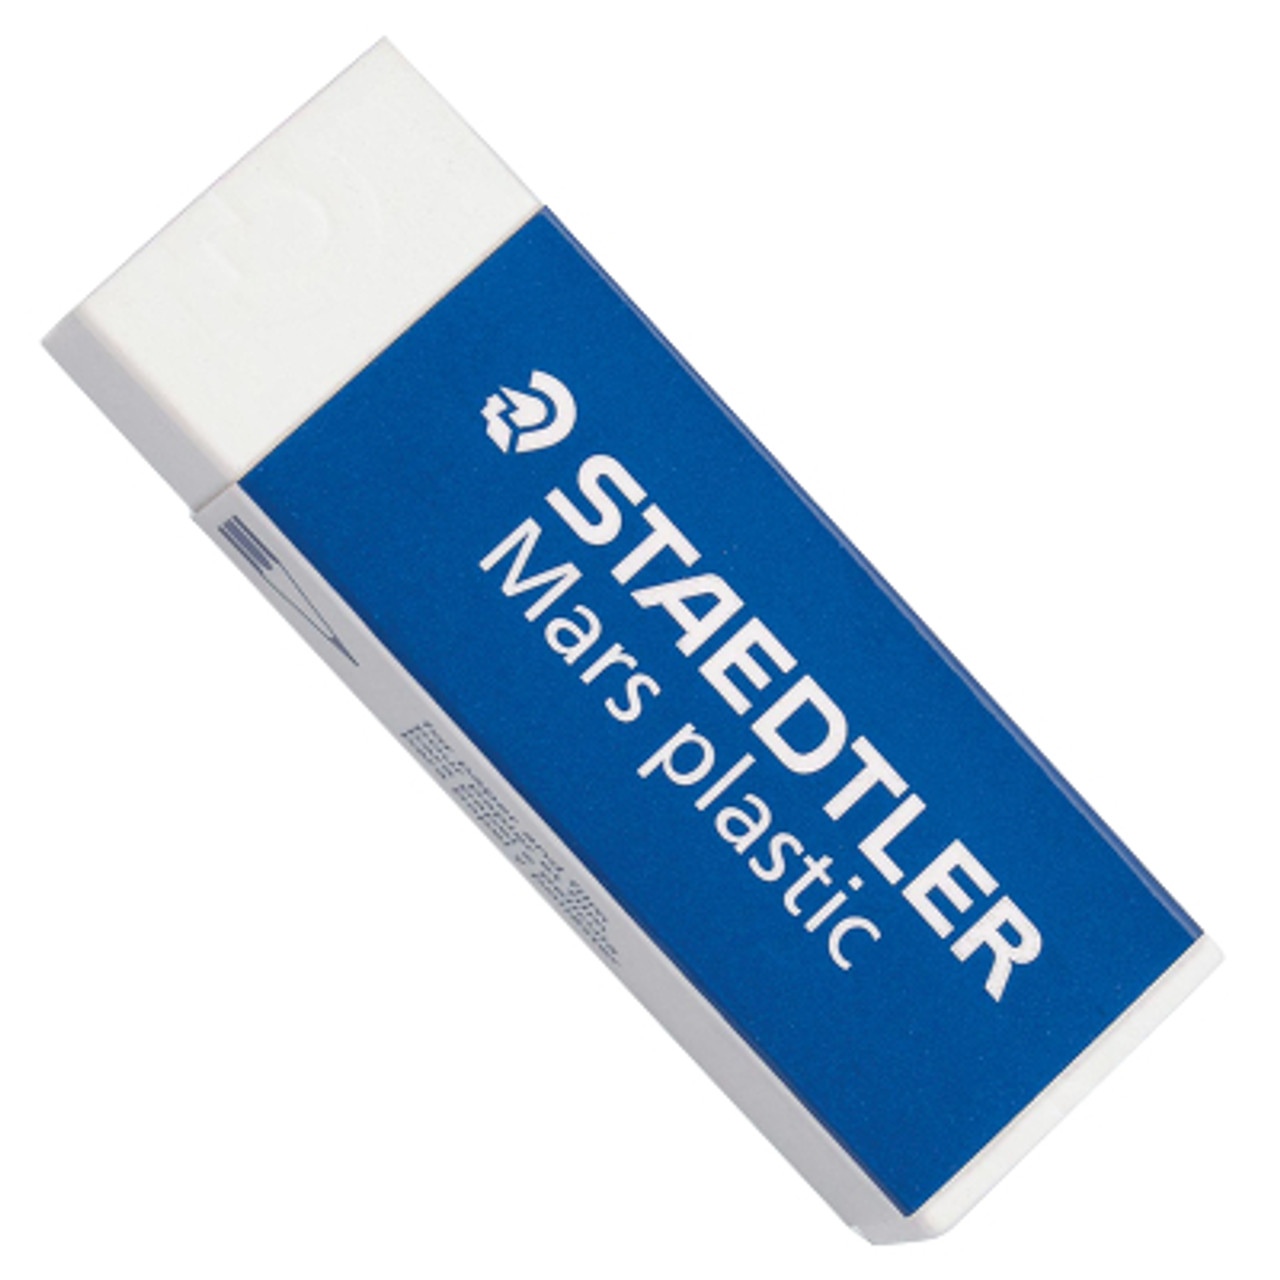 Staedtler Mars White Plastic Eraser - John Neal Books